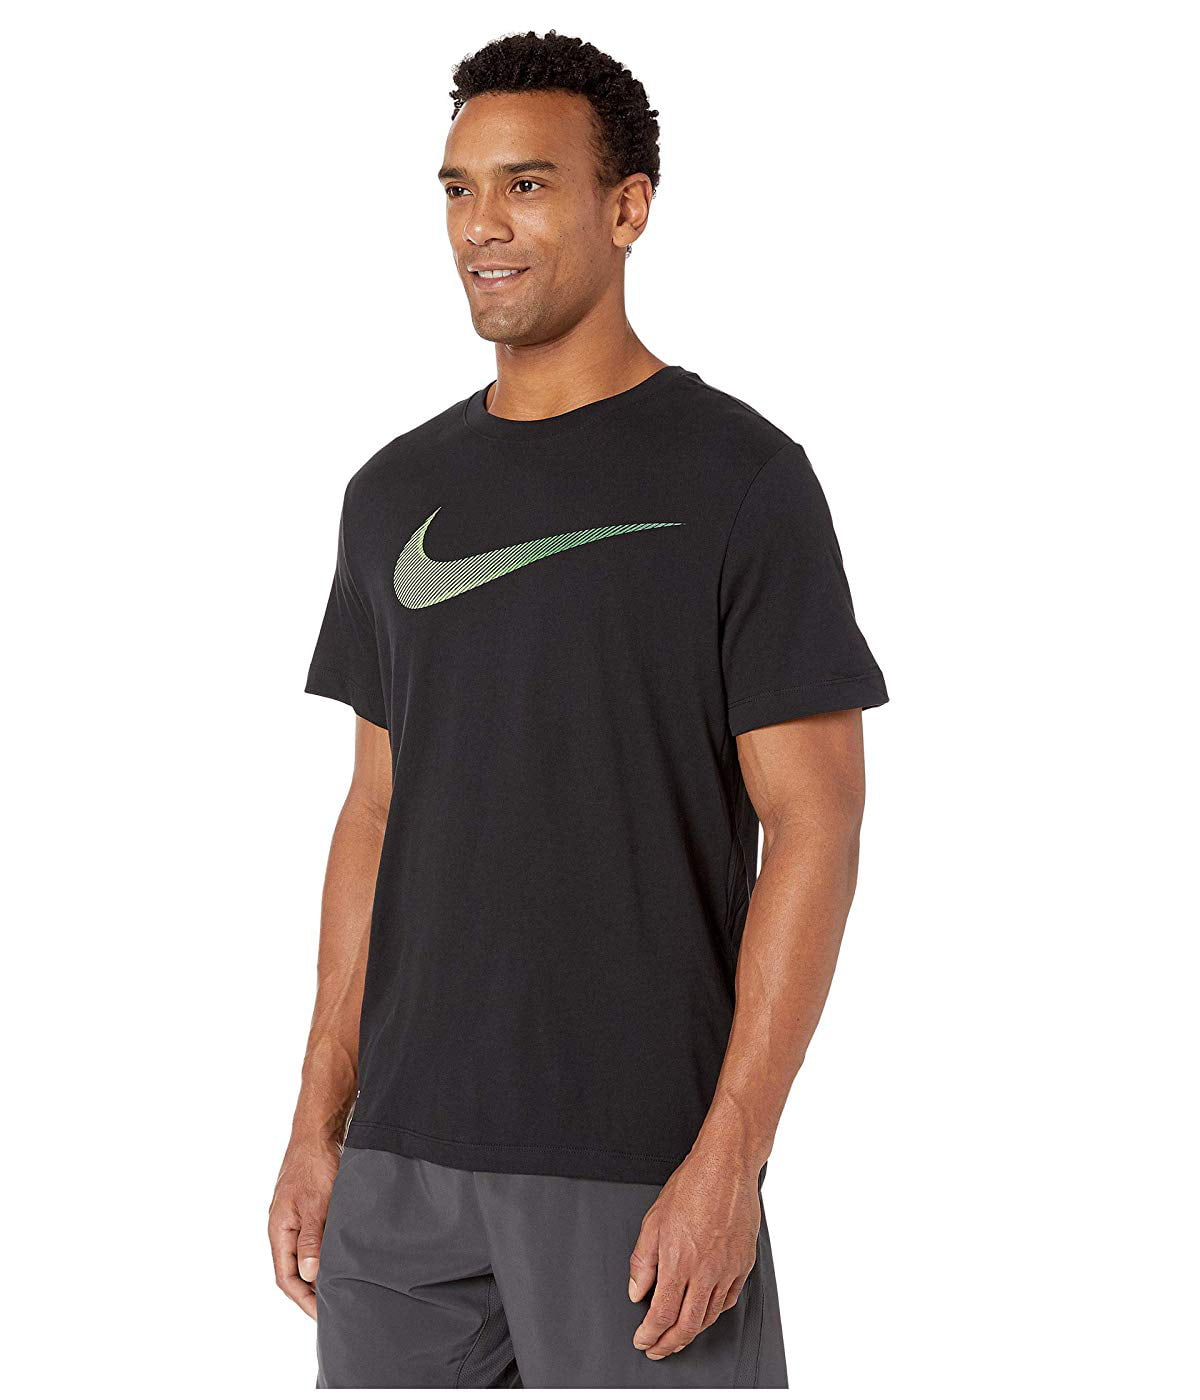 Nike Mens T-Shirt Green Swoosh Logo Dri-Fit Tee Black XL - Walmart.com